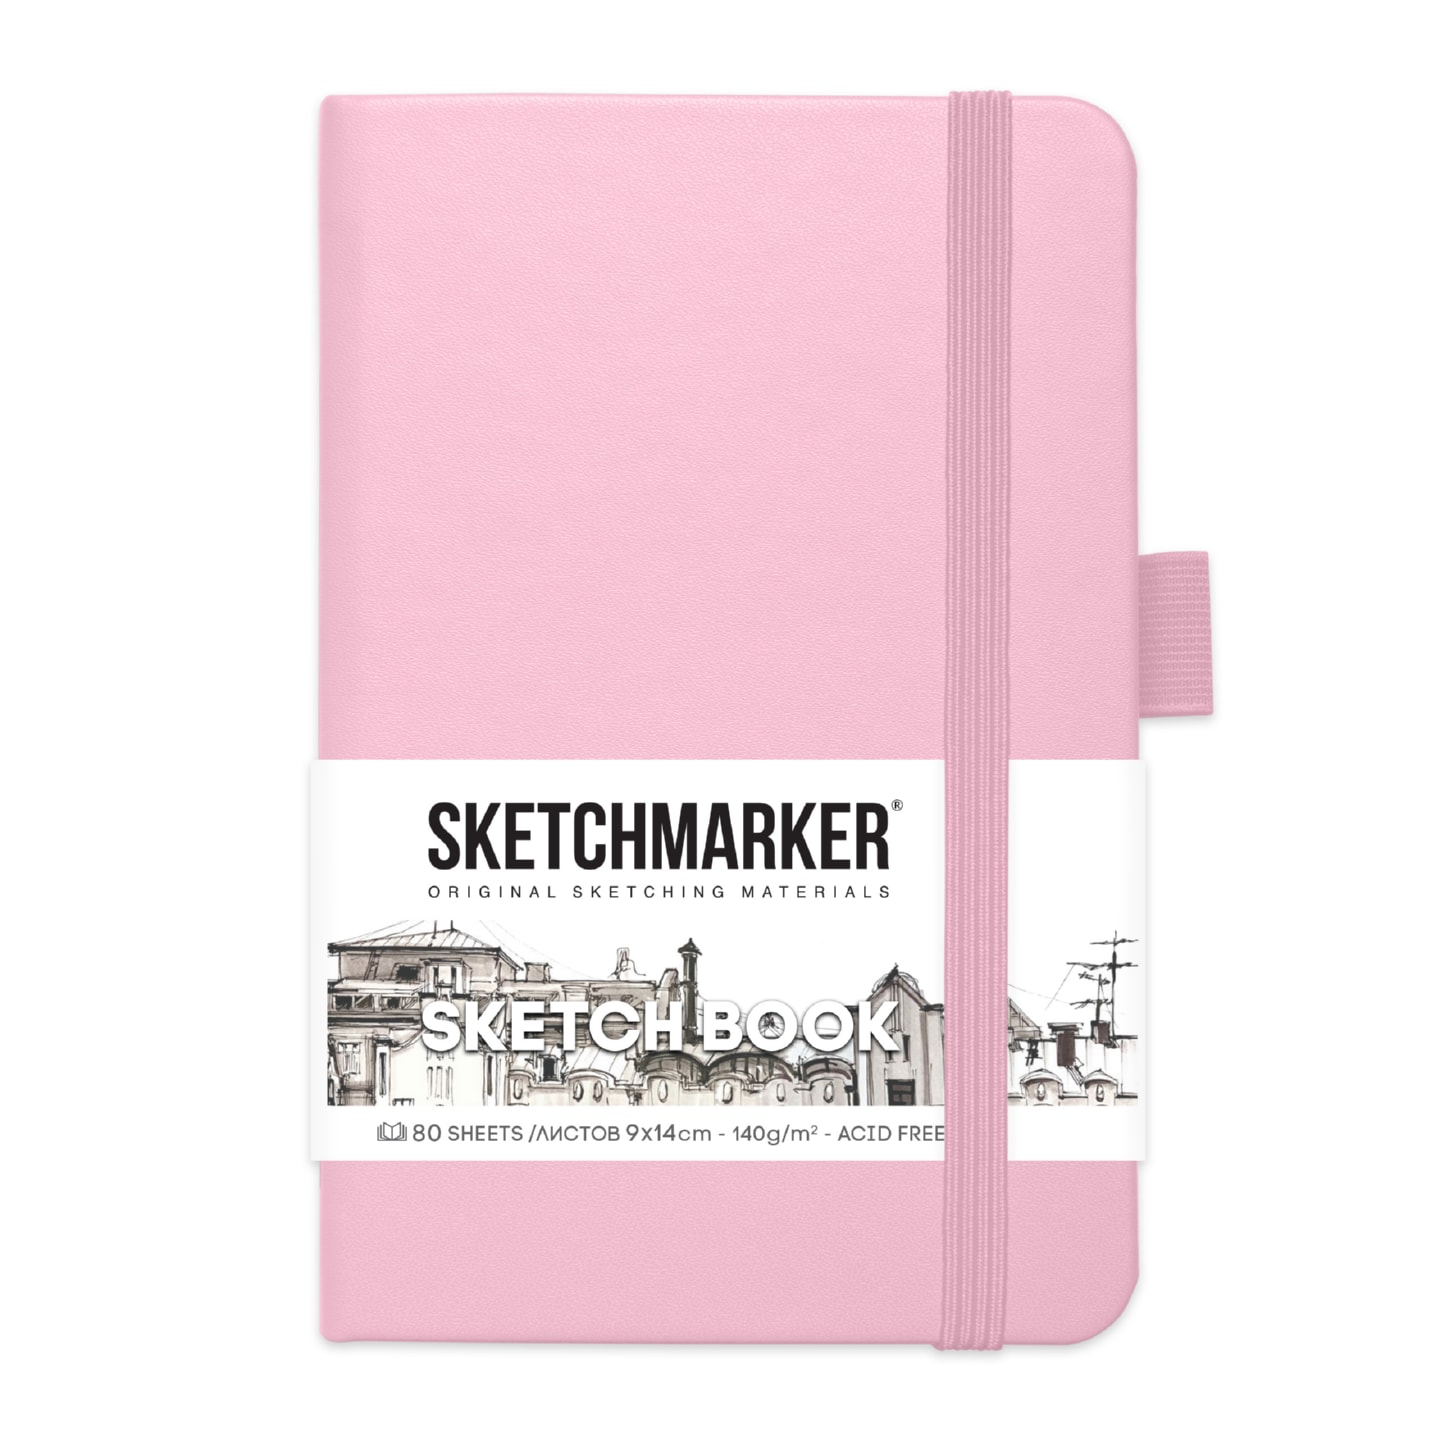 Блокнот для зарисовок Sketchmarker 140г/кв.м 9*14см 80л твердая обложка Розовый